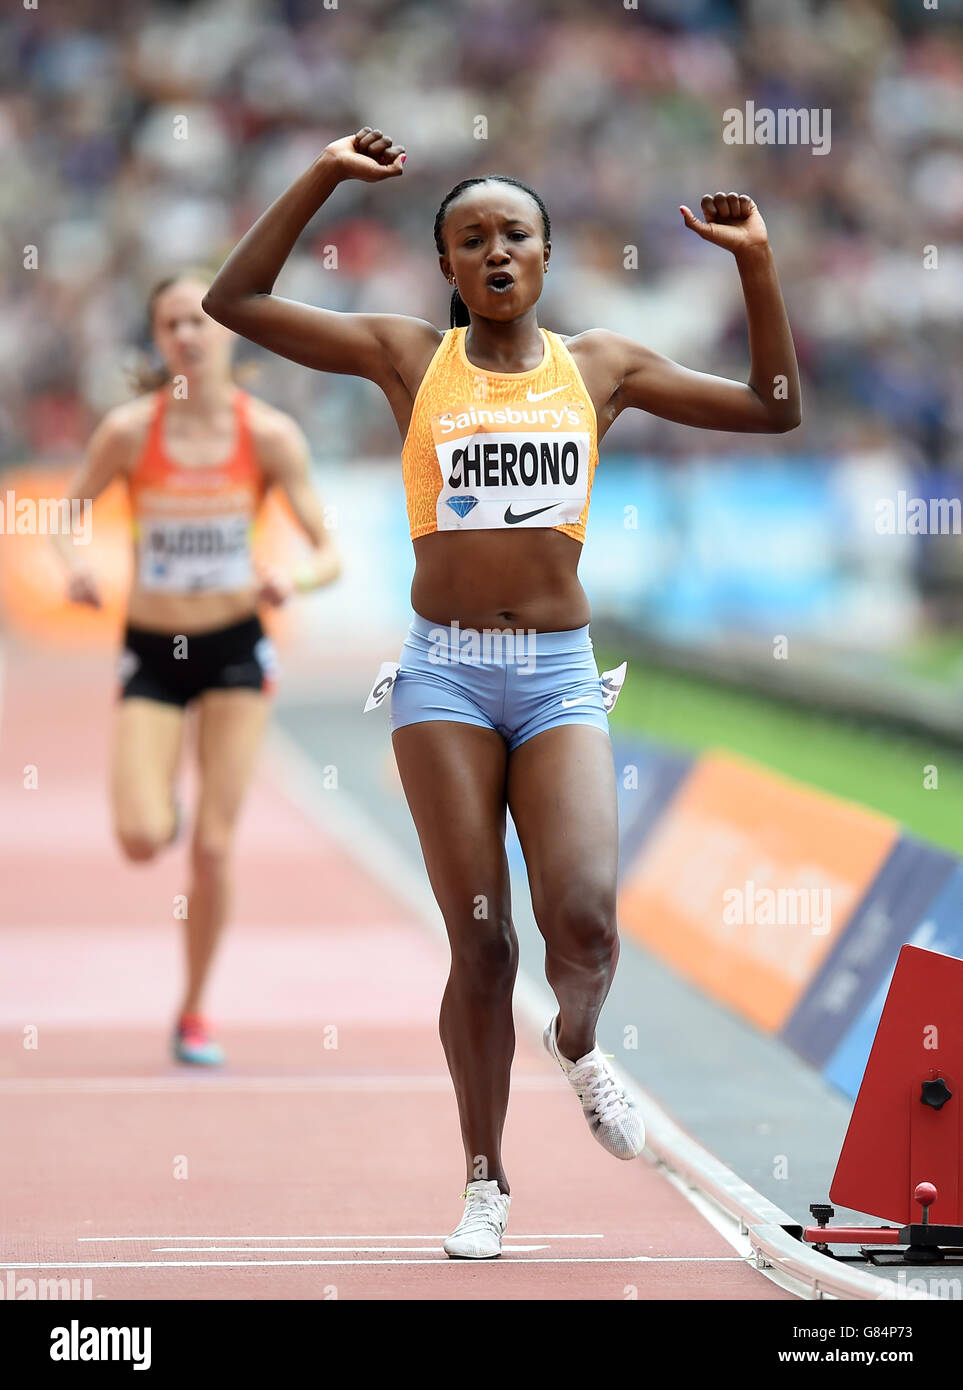 Le Kenya Mercy Cherono Koech célèbre la victoire des 5000m féminins lors du deuxième jour des Jeux d'anniversaire de Sainsbury au stade du parc olympique Queen Elizabeth, Londres. Banque D'Images